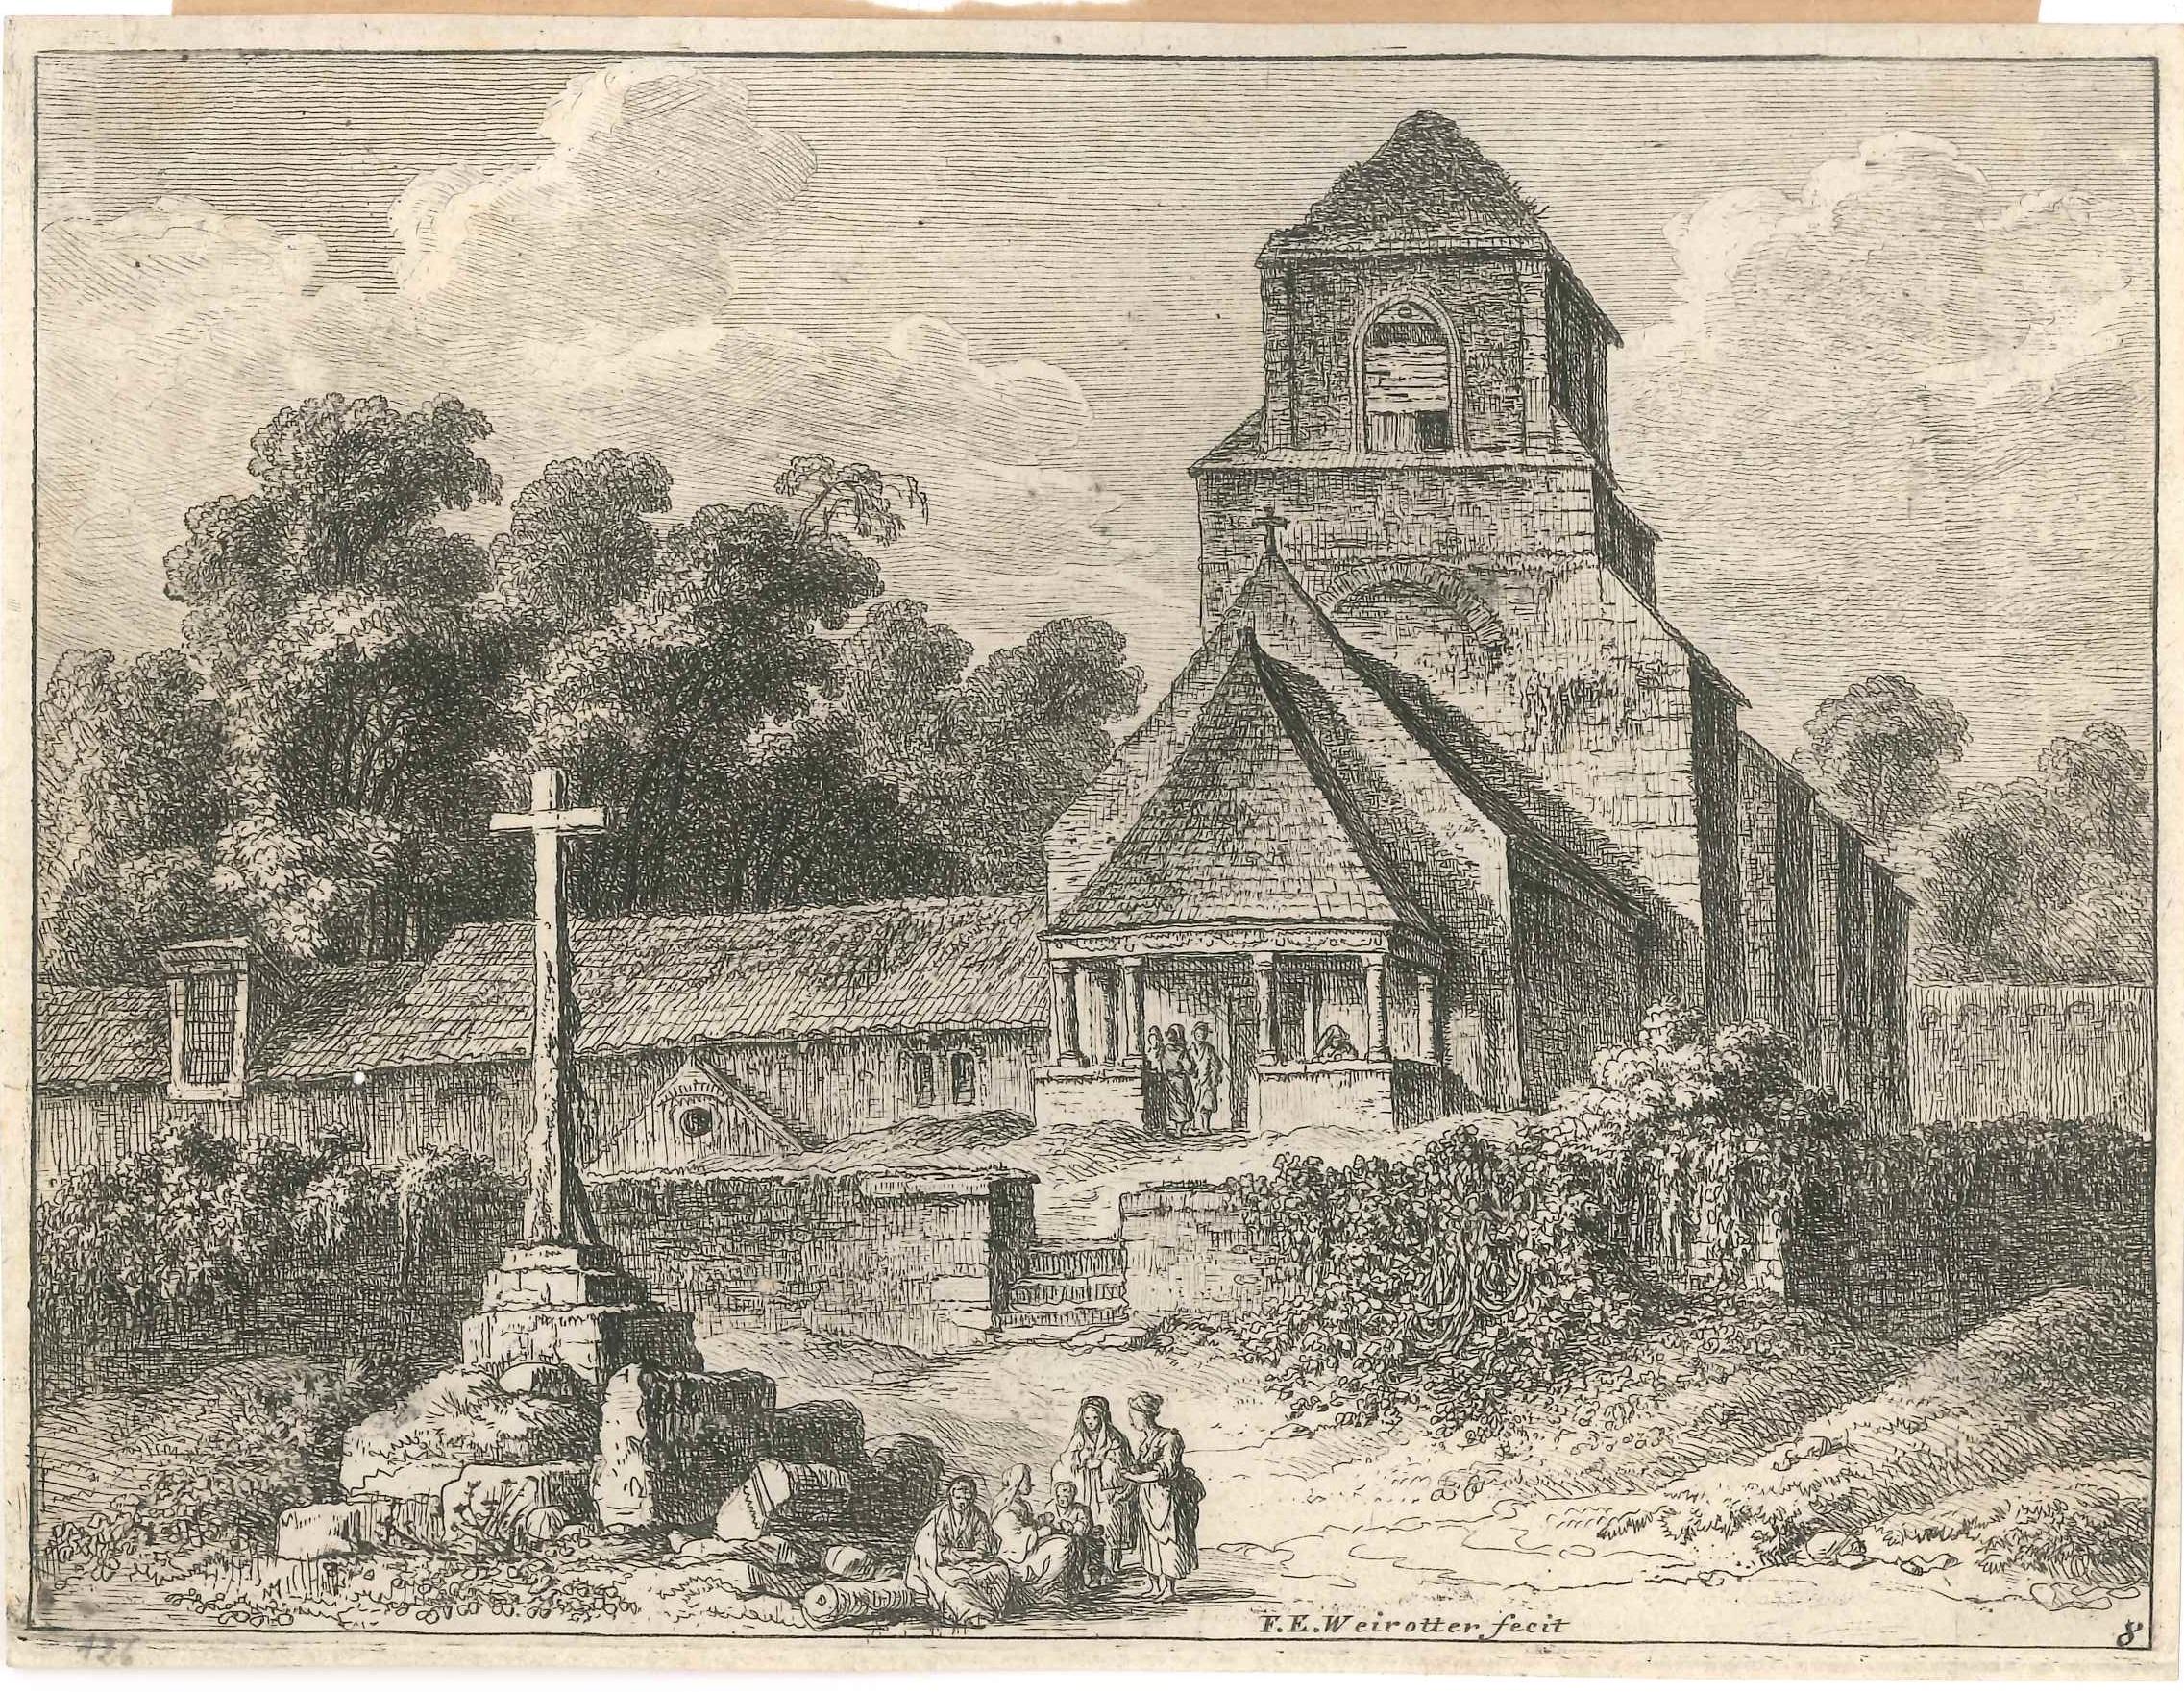 Franz Edmund Weirotter Landscape Print - Old Church - Original Etching by F.E. Weirotter - Half of 1700